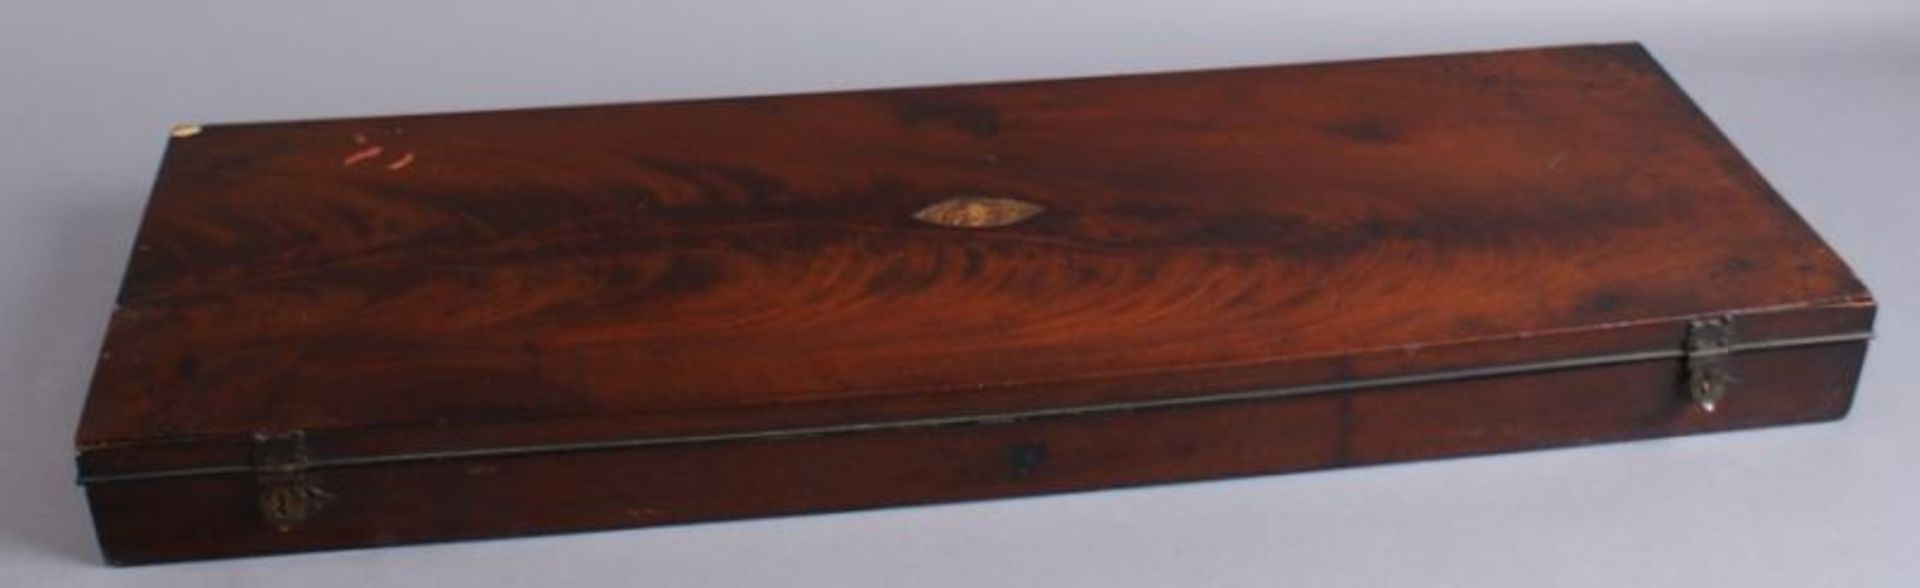 BIEDERMEIER SCHATULLE um 1800, Mahagoni Kassette im Inneren mit Aufteilung, rest.-bed-. 65x21x5,5 cm - Bild 2 aus 3